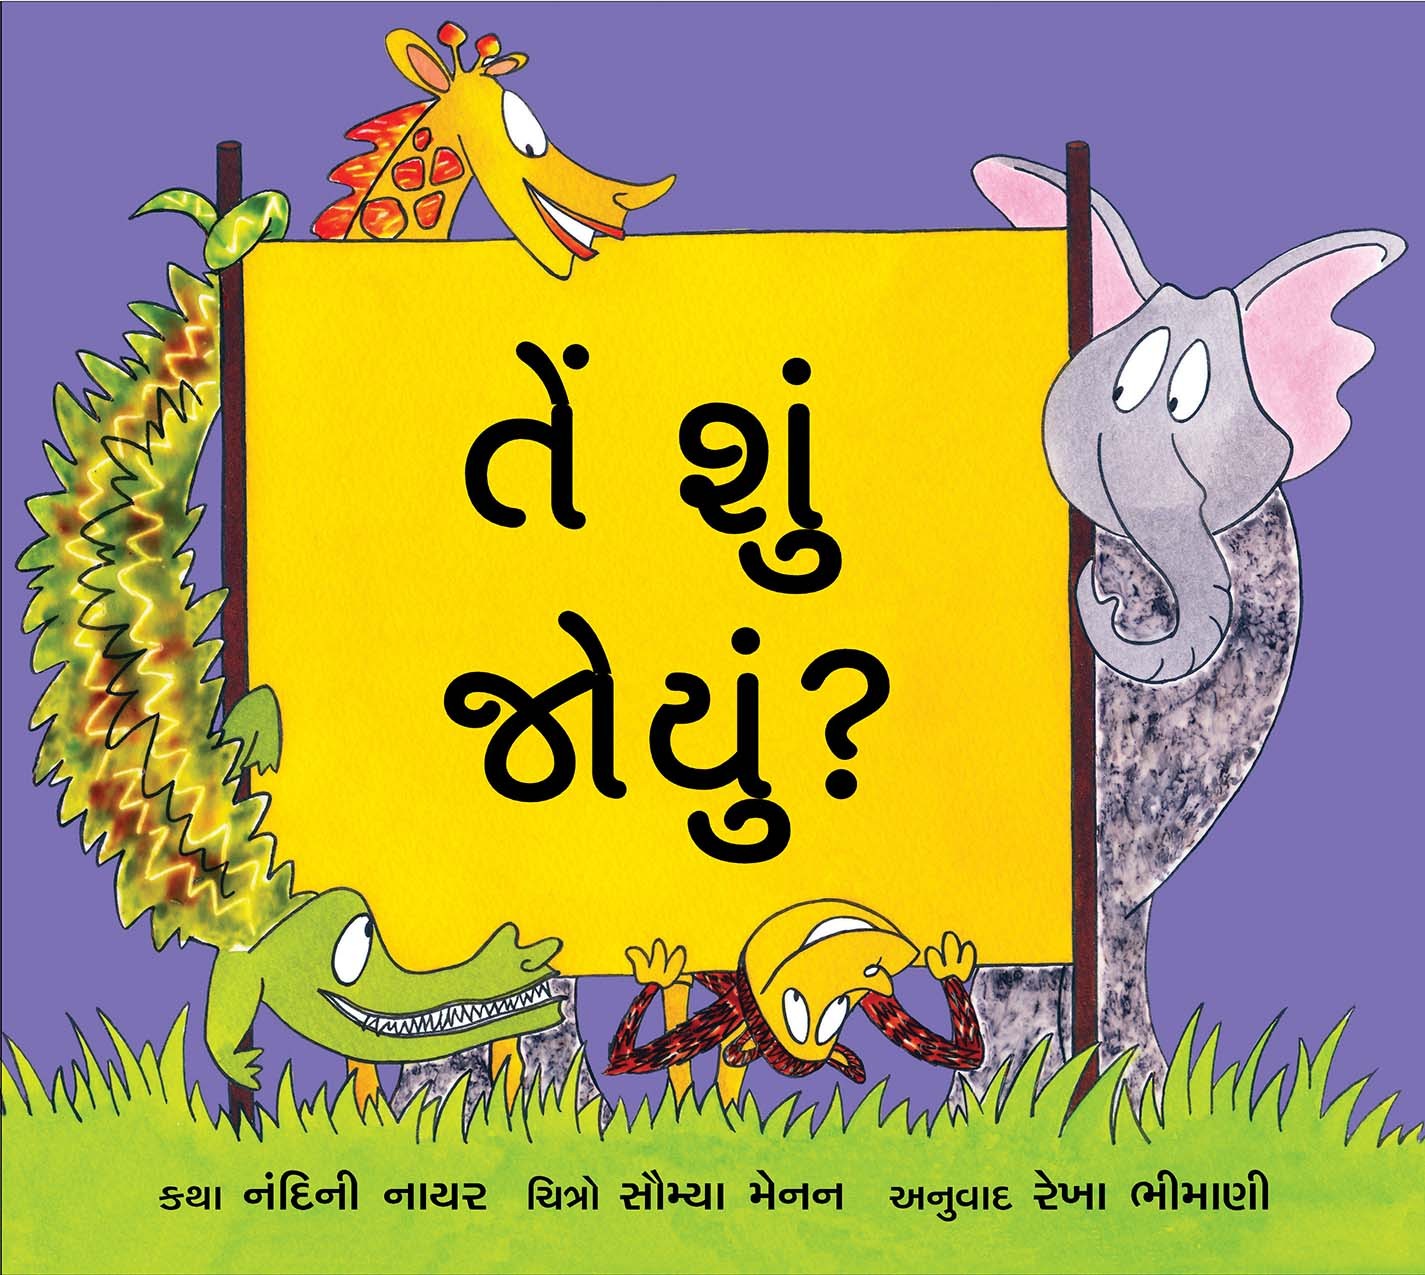 What Did You See?/Tey Shu Joyu? (Gujarati)